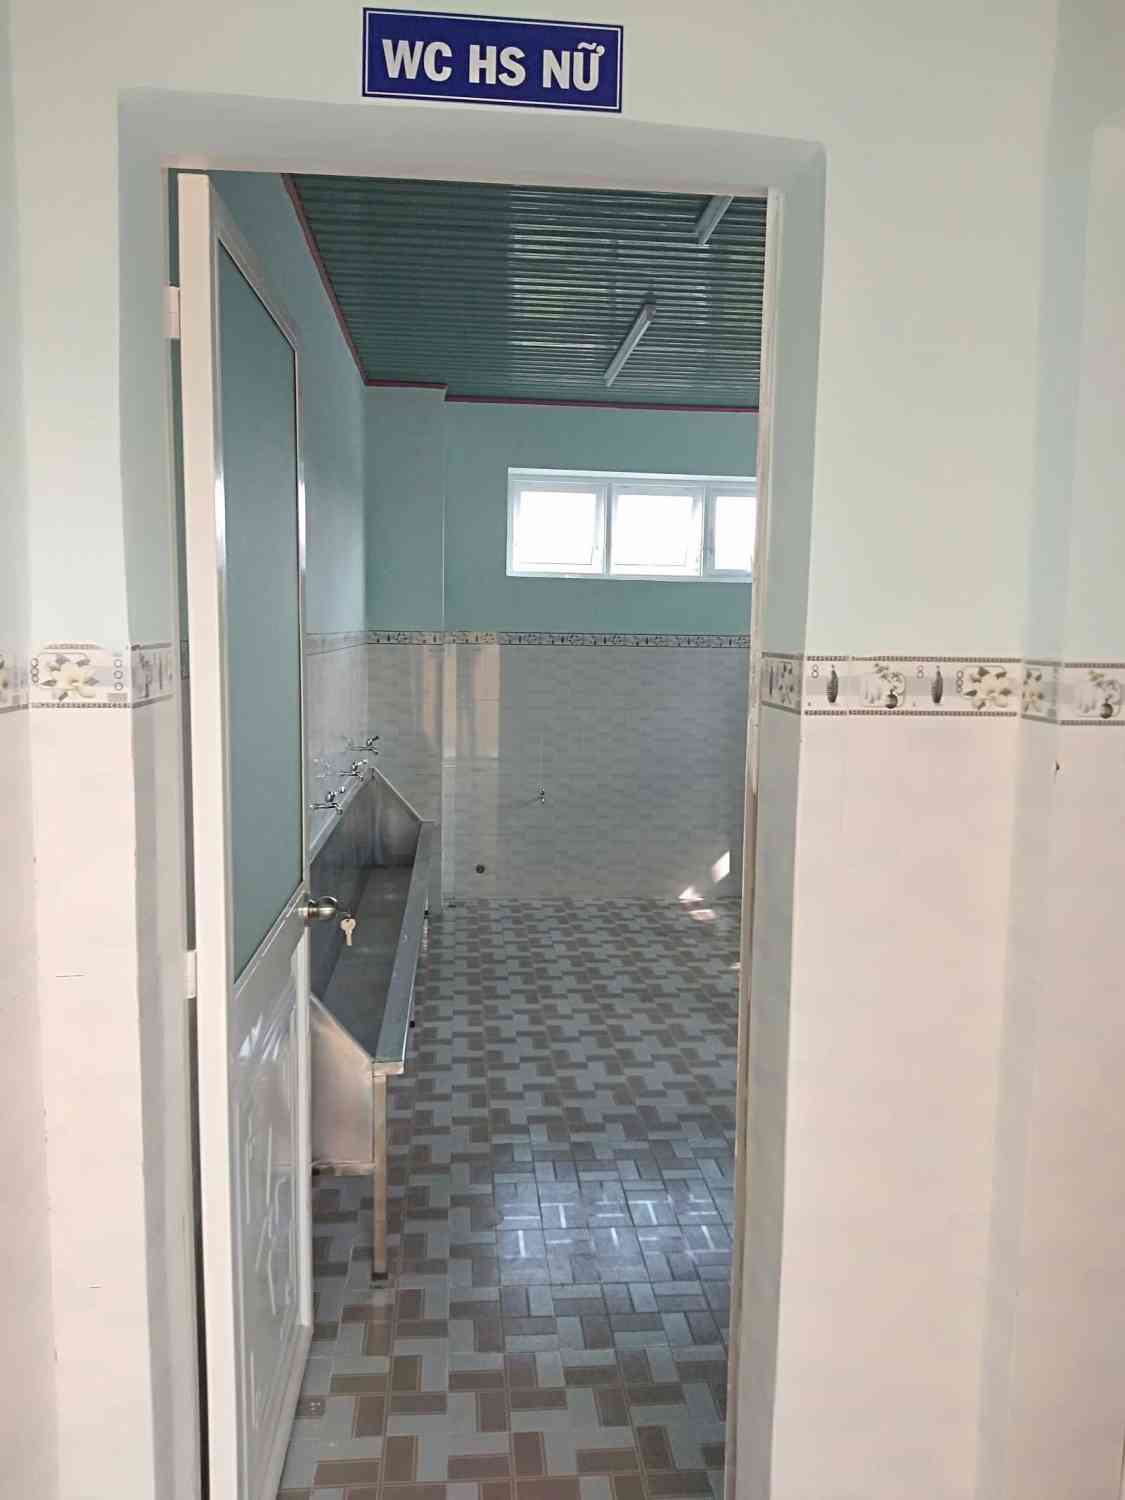 Khu vực nhà vệ sinh dành cho học sinh nữ